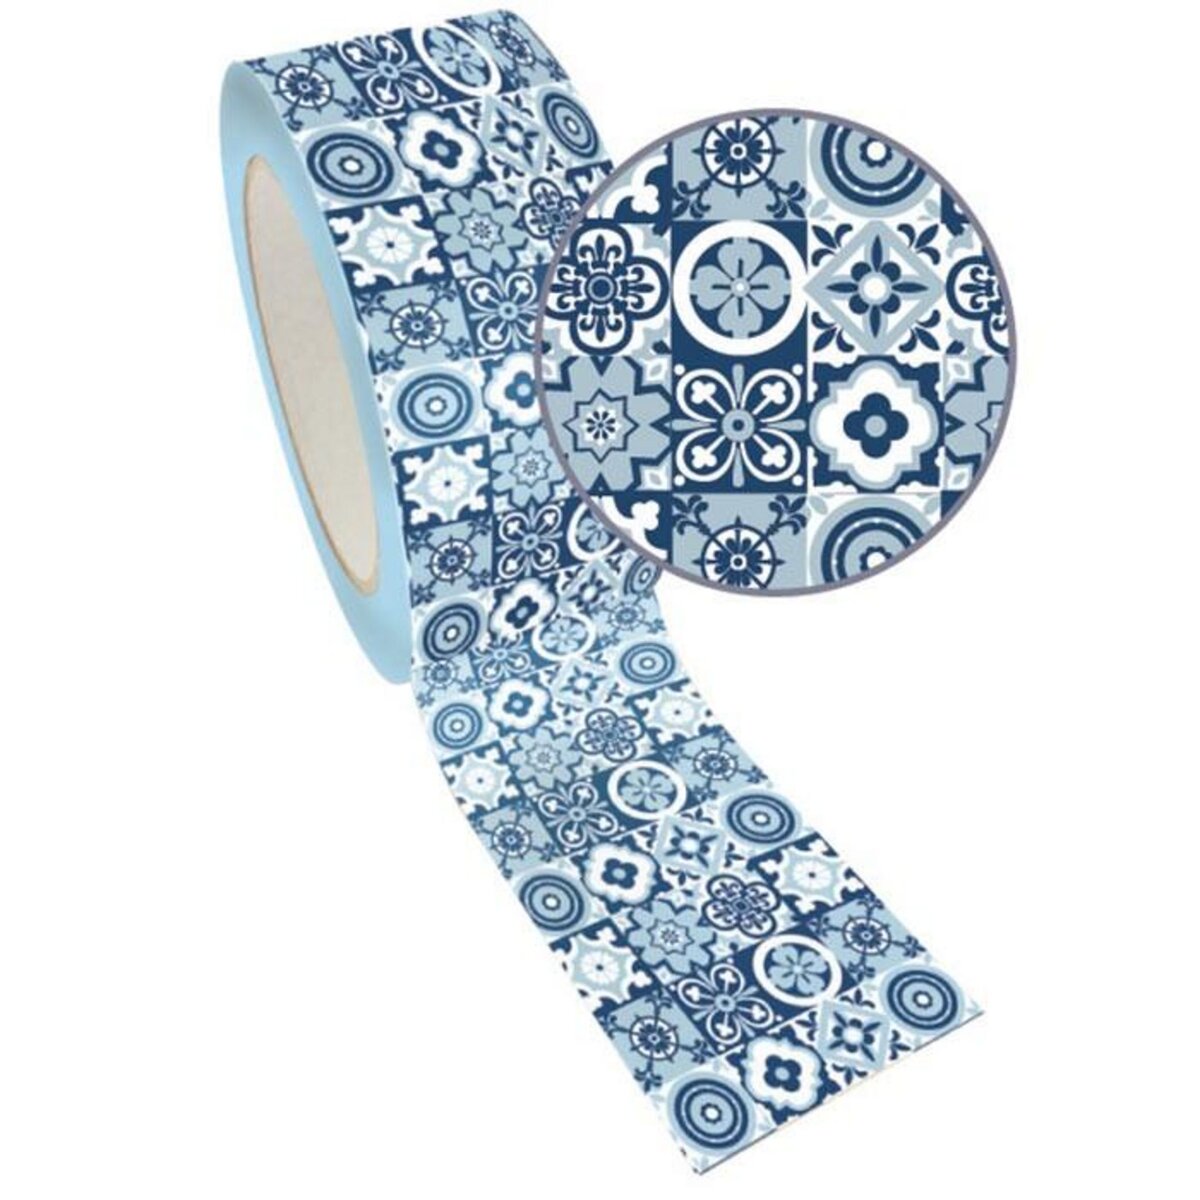 Graine créative Masking Tape XL bleu 4,8 cm x 8 m - Carrelage